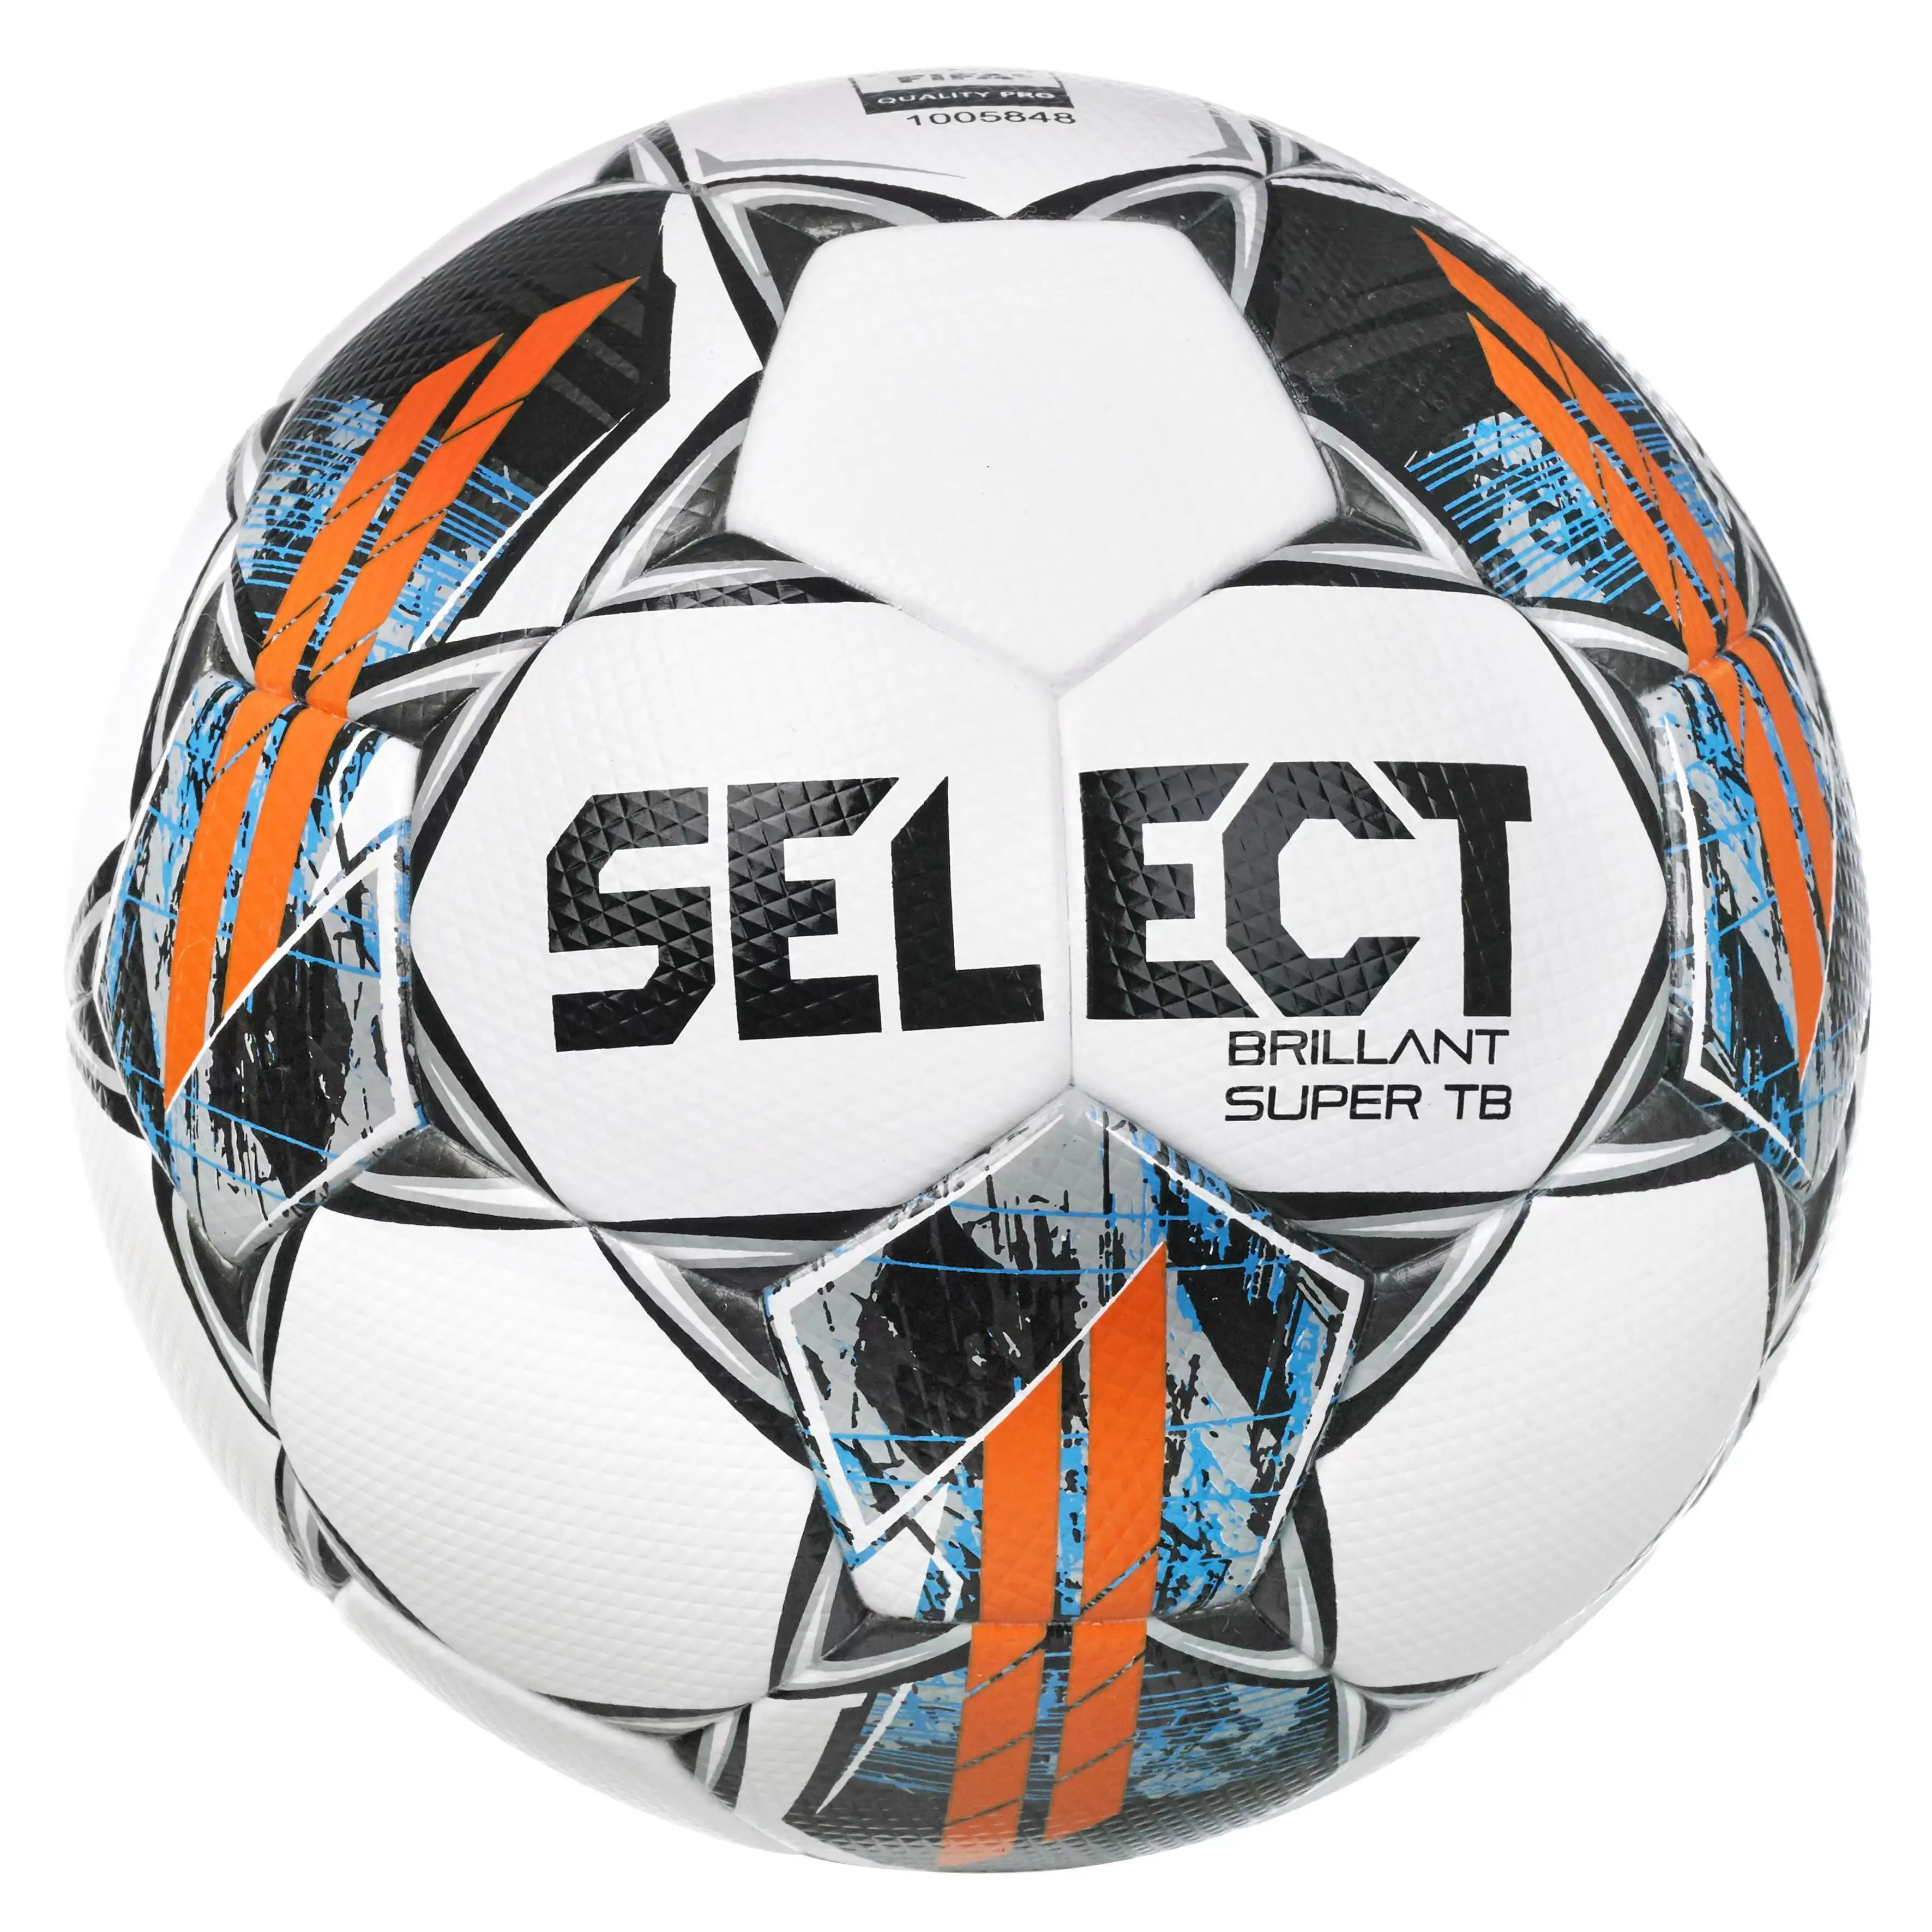 サッカーボールサイズ5サイズ4プロトップマッチサッカー用オリジナルセレクトサッカーカスタムベストレザー素材